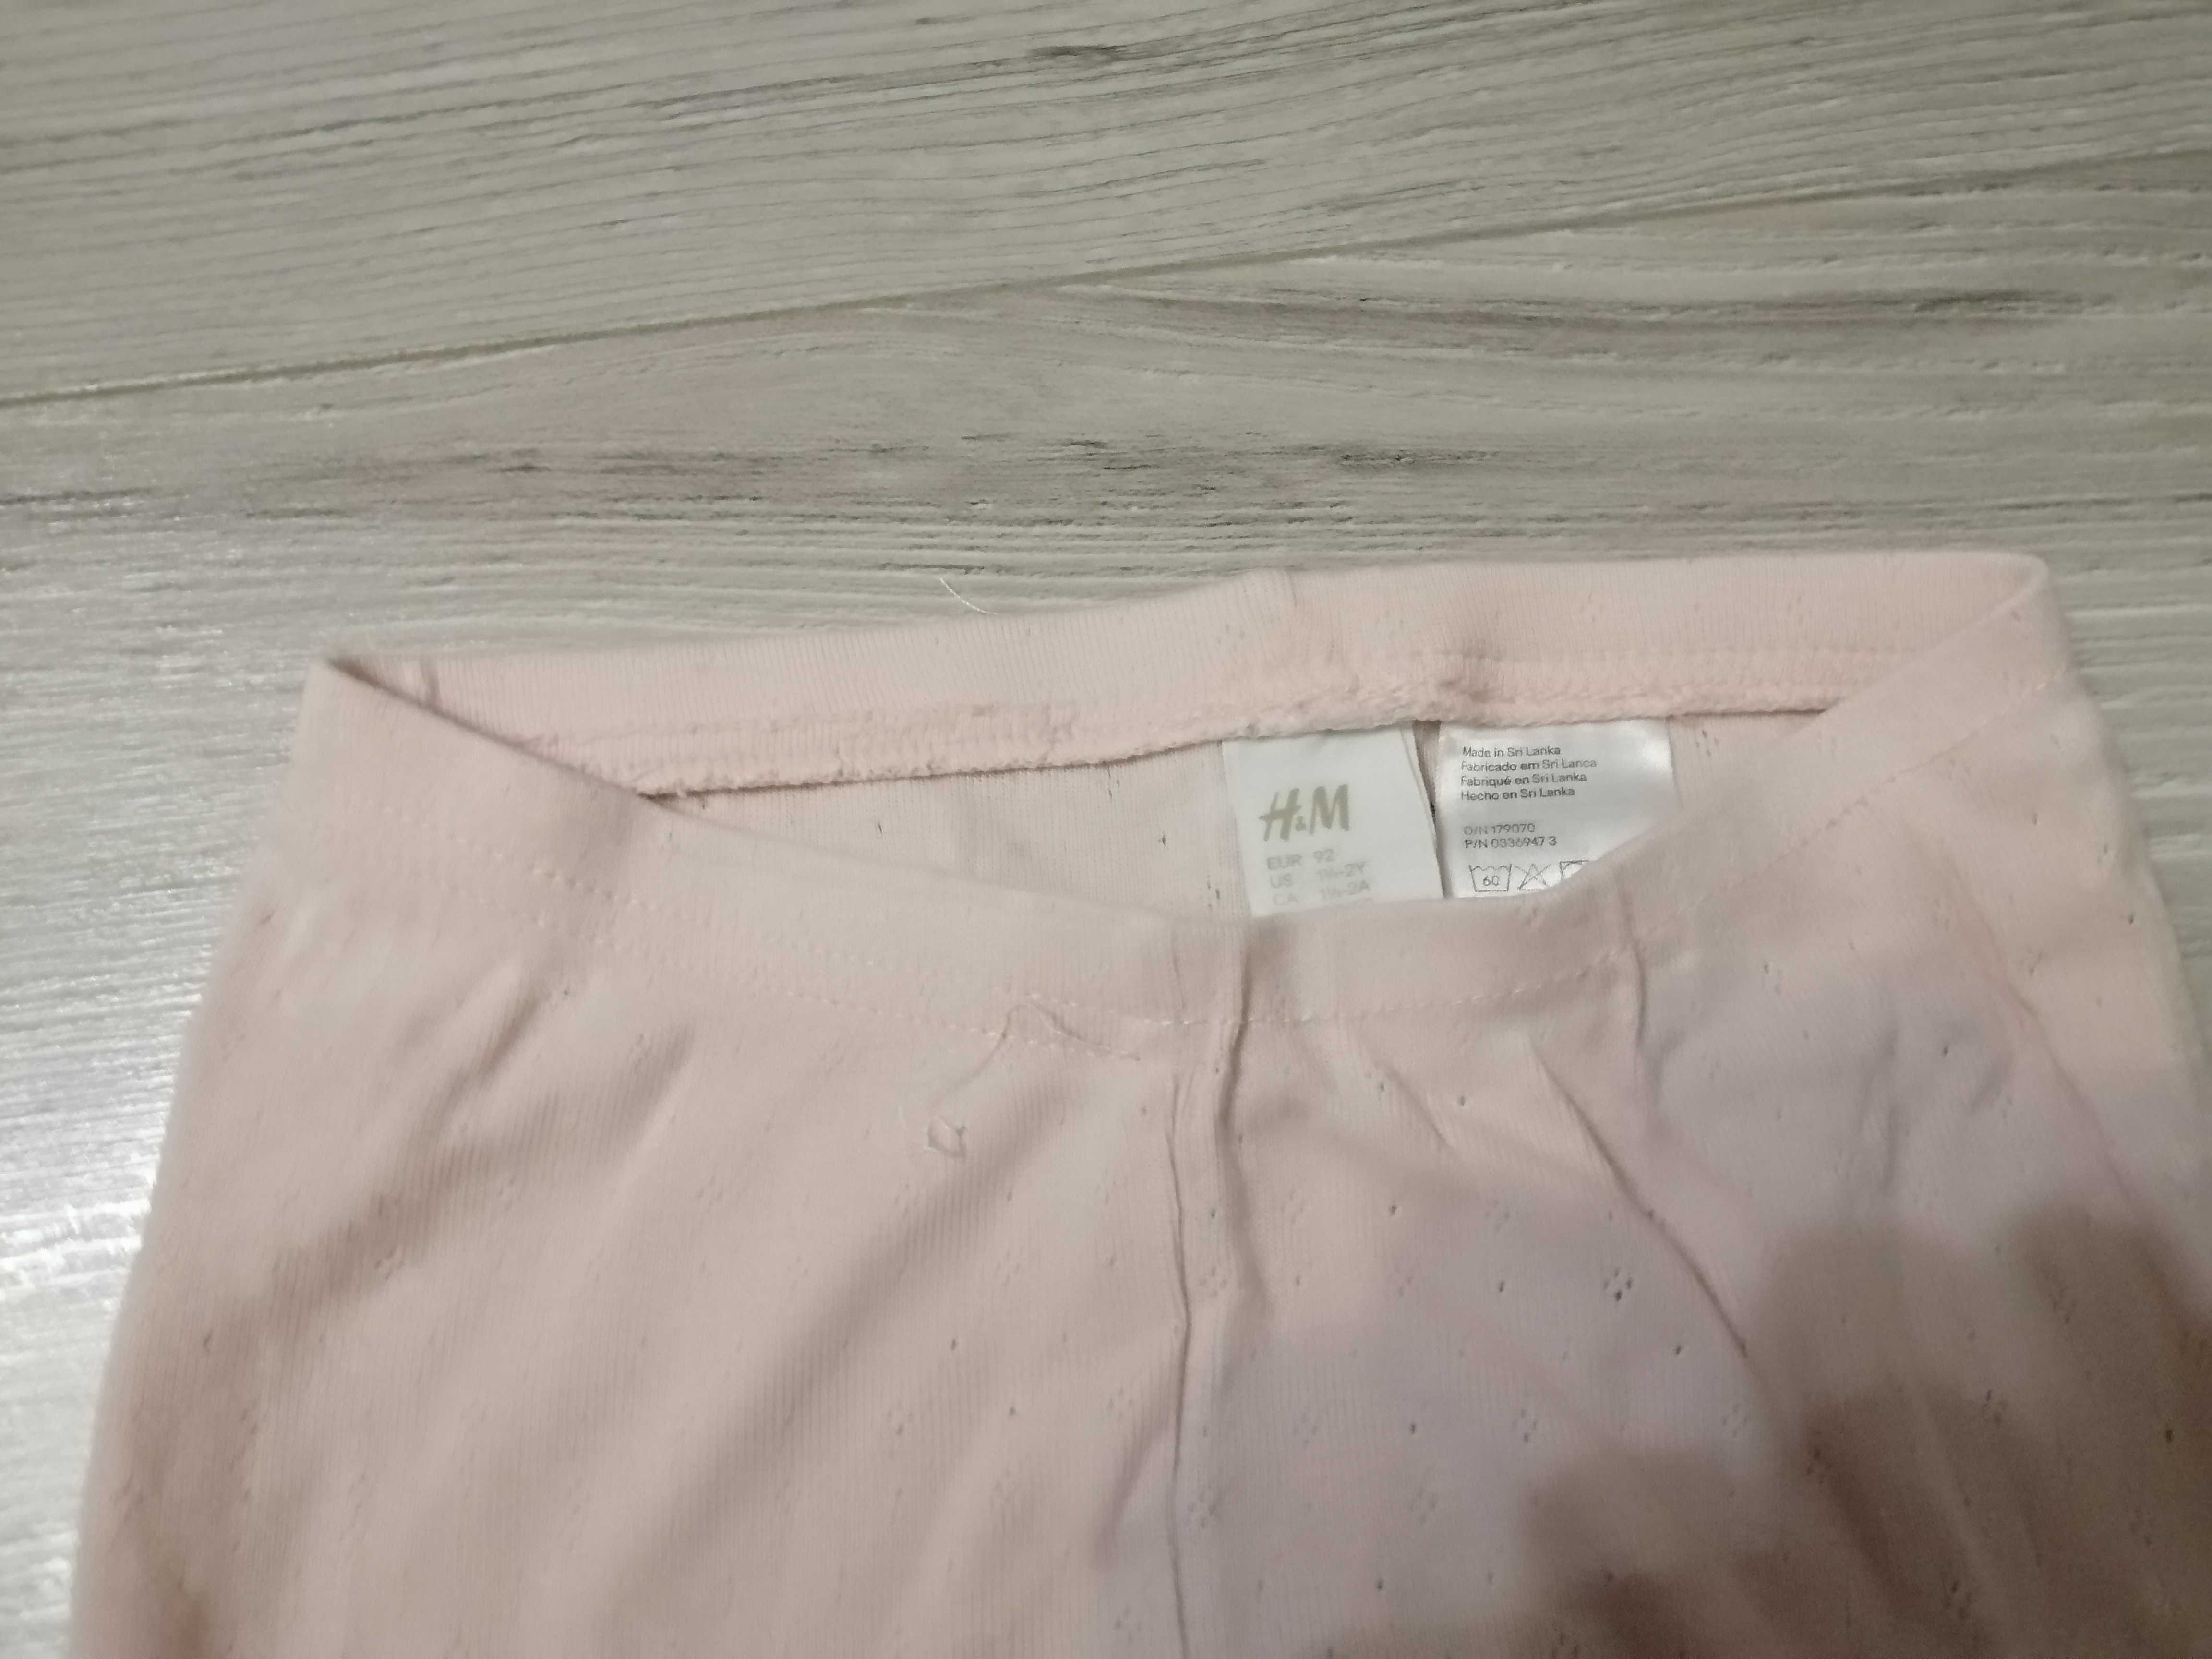 legginsy dla dziewczynki firmy H&M w rozmiarze 92/98 cm